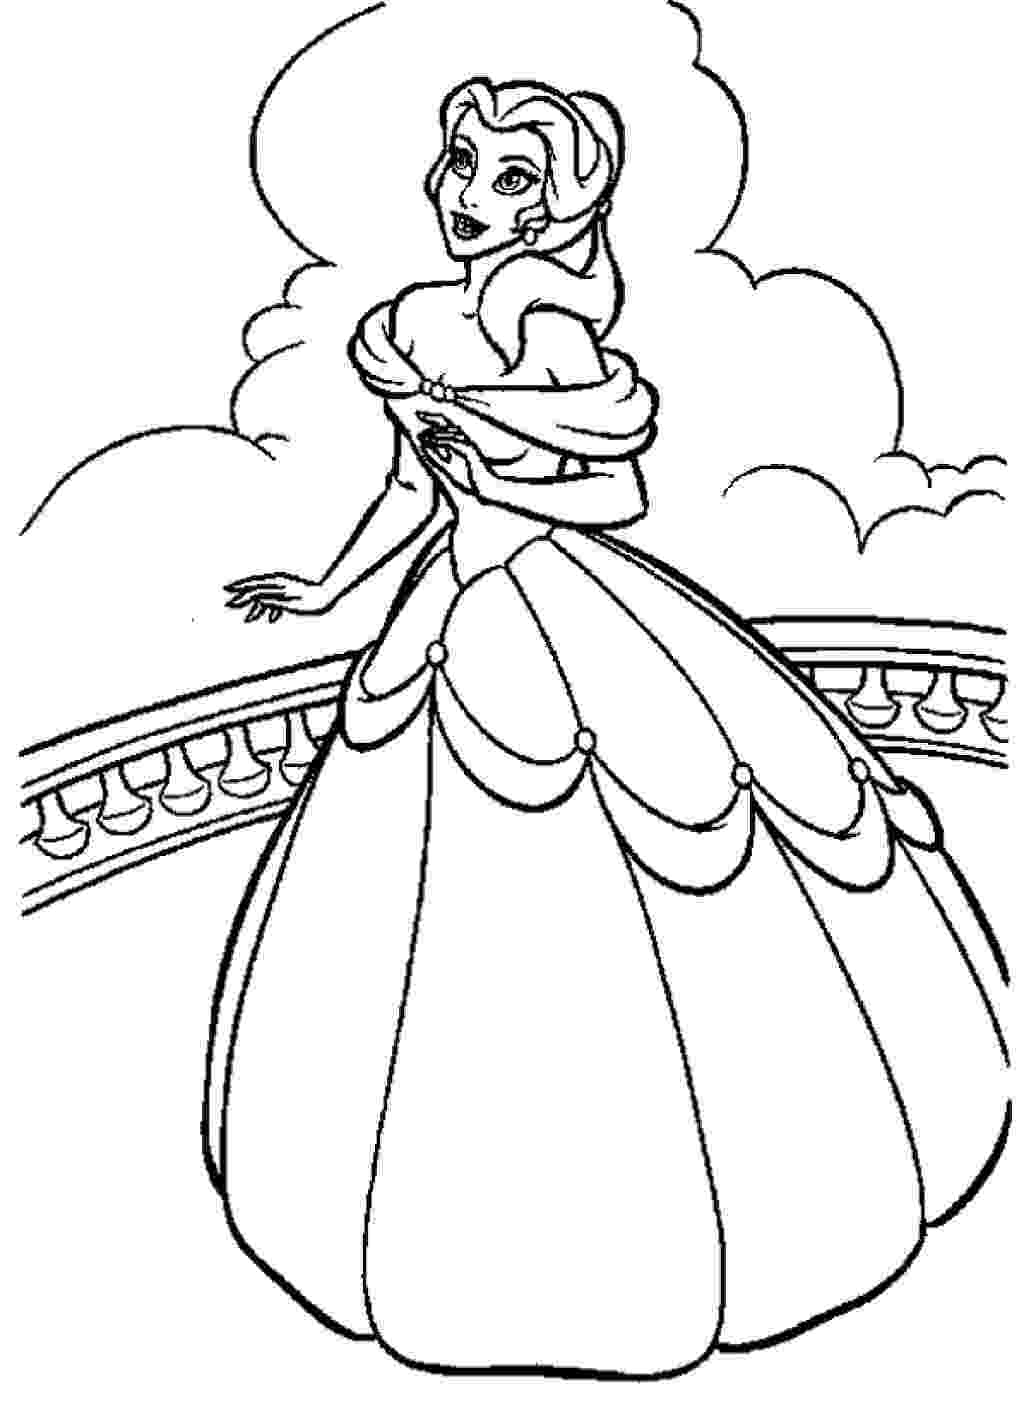 coloring pages princess belle disney princess belle and her gown coloring sheet princess pages coloring belle 